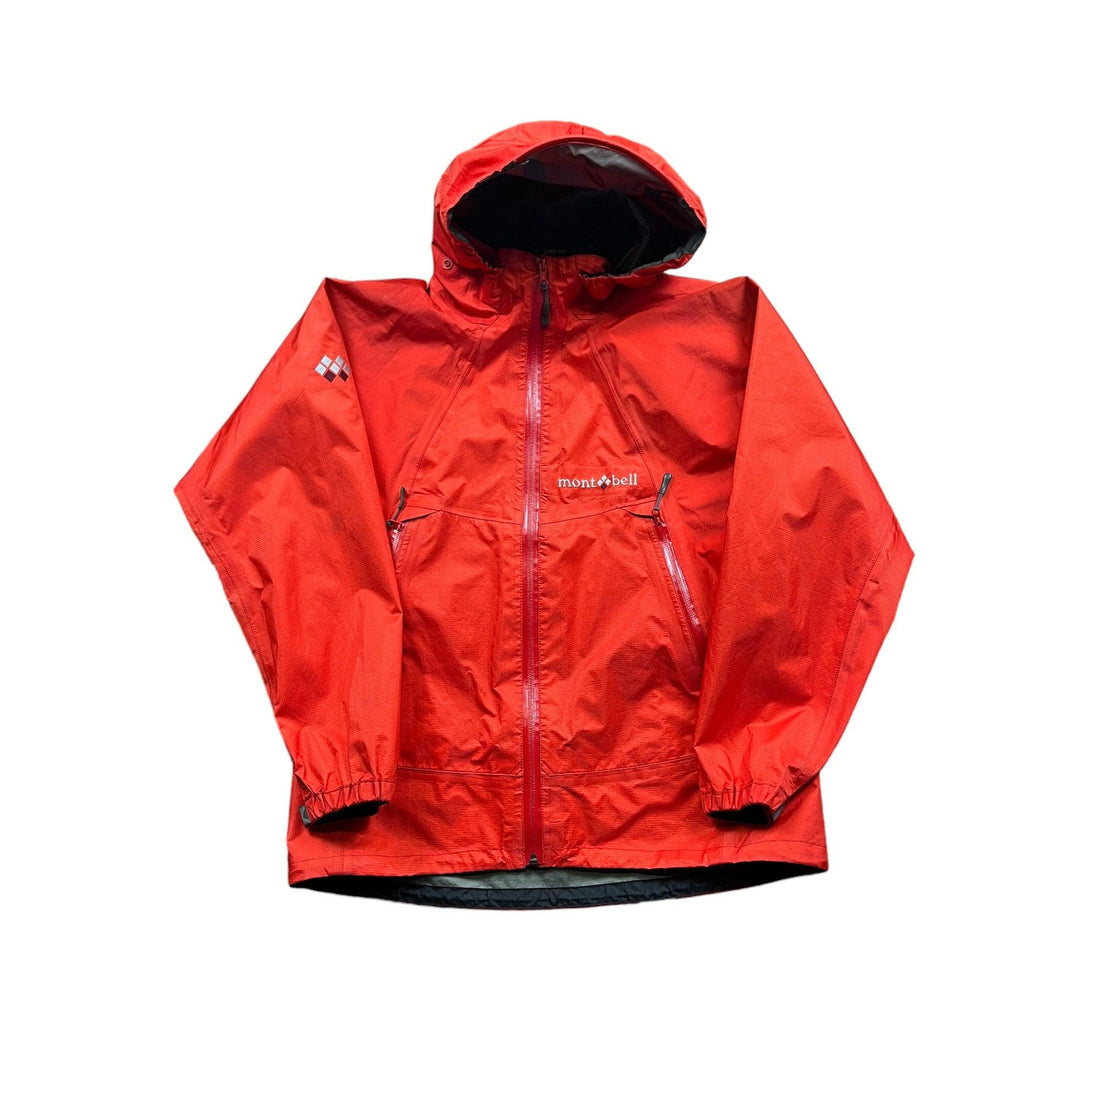 Vintage Orange Montbell Waterproof Gore-Tex Jacket - Large - The Streetwear Studio